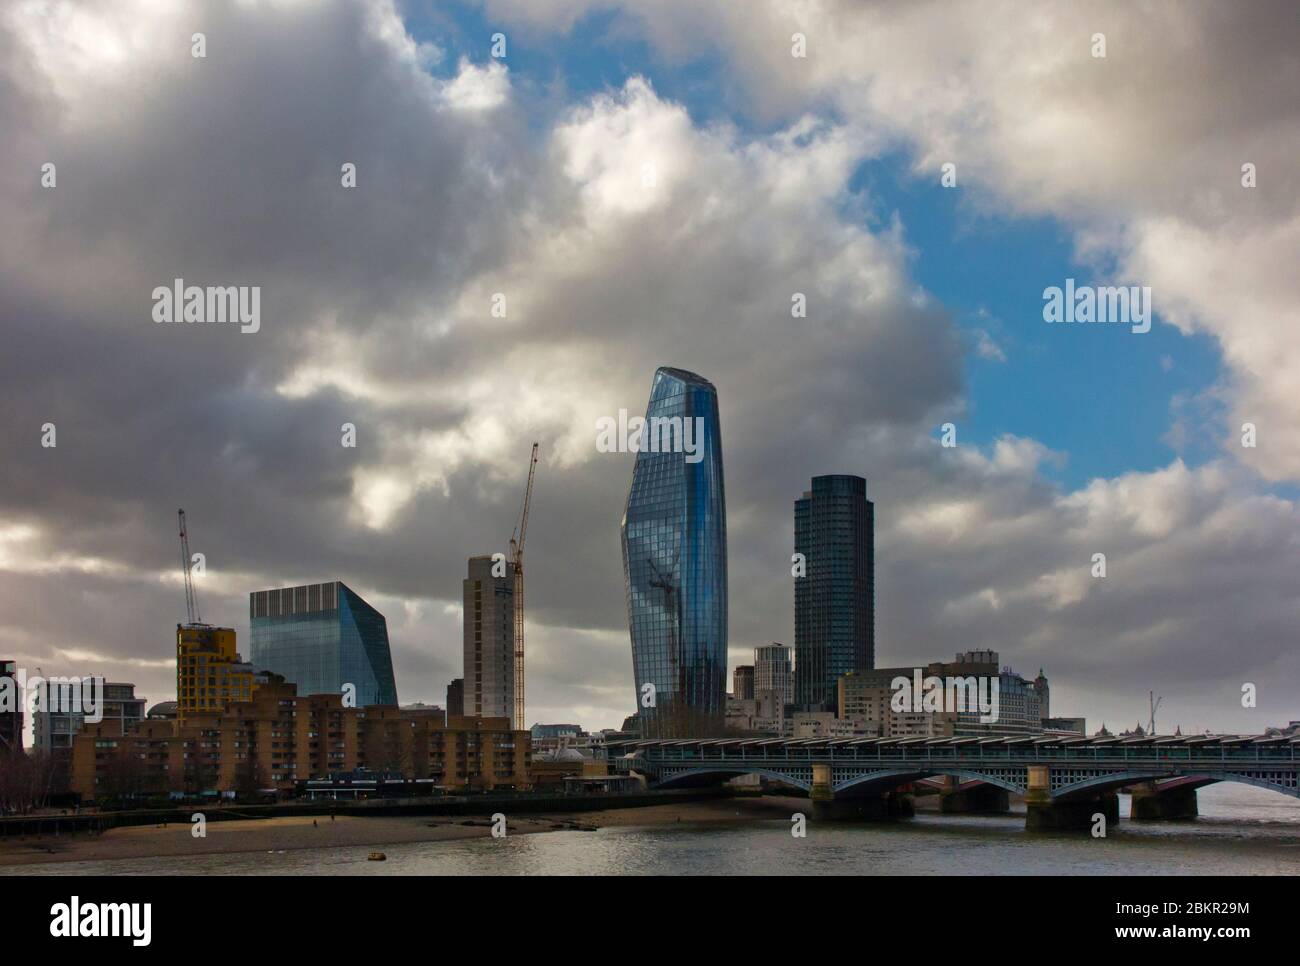 Lo skyline di Londra mostra la forma insolita dell'edificio One Blackfriars, conosciuto anche come The Vase, progettato da Simpson Haugh e Partners. Foto Stock